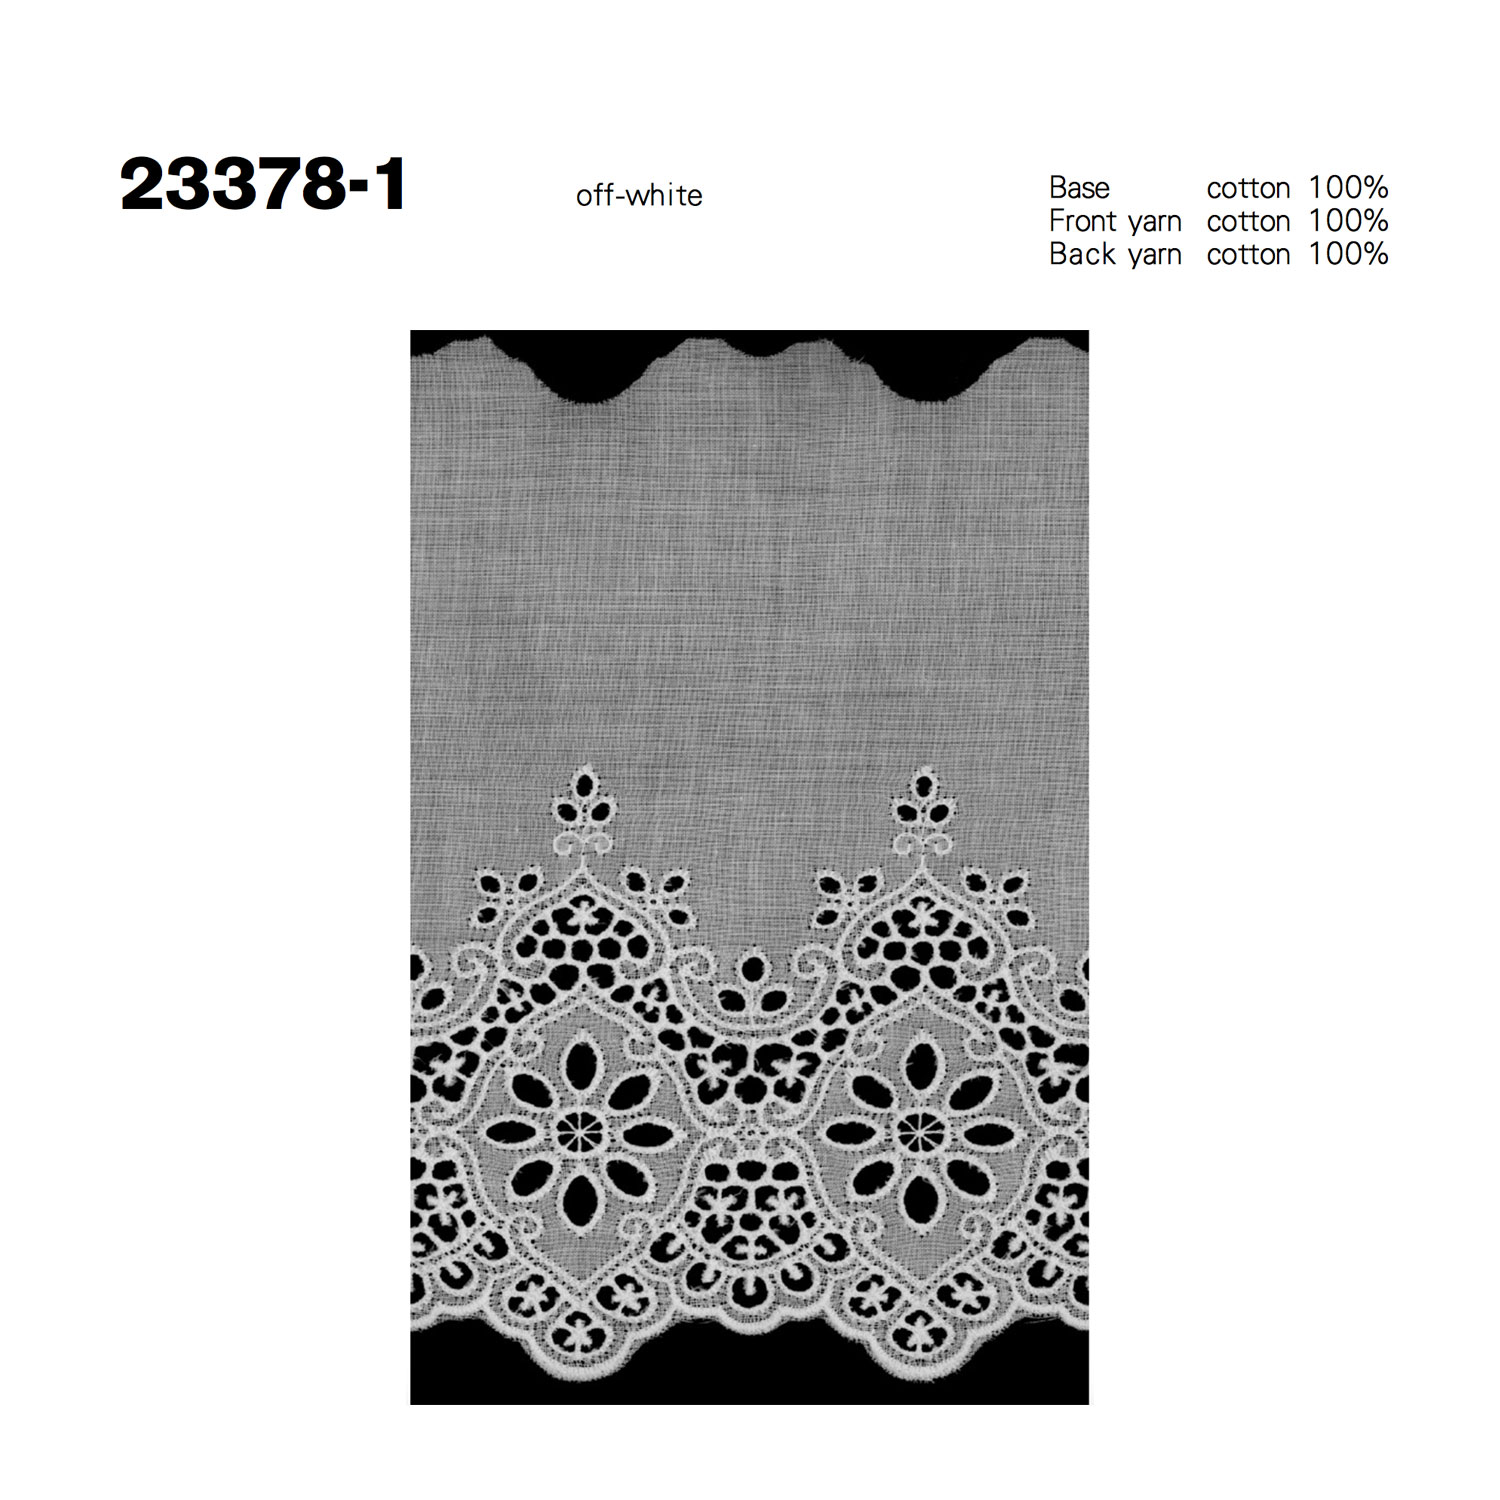 23378-1 Cotton Lace Kyowa Lace